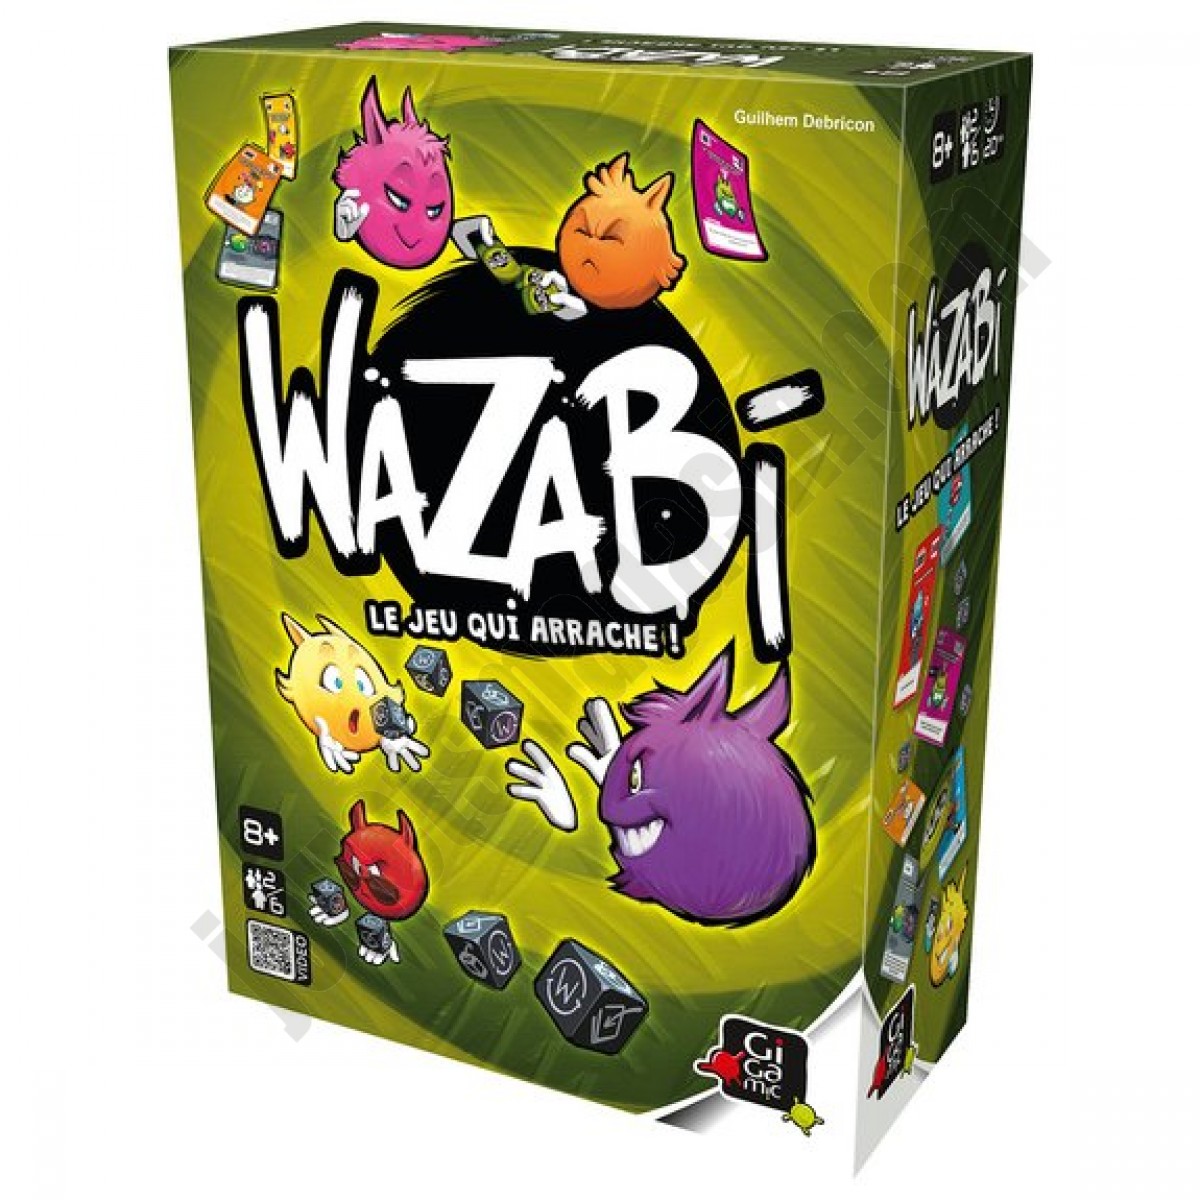  Wazabi En promotion -  Wazabi En promotion